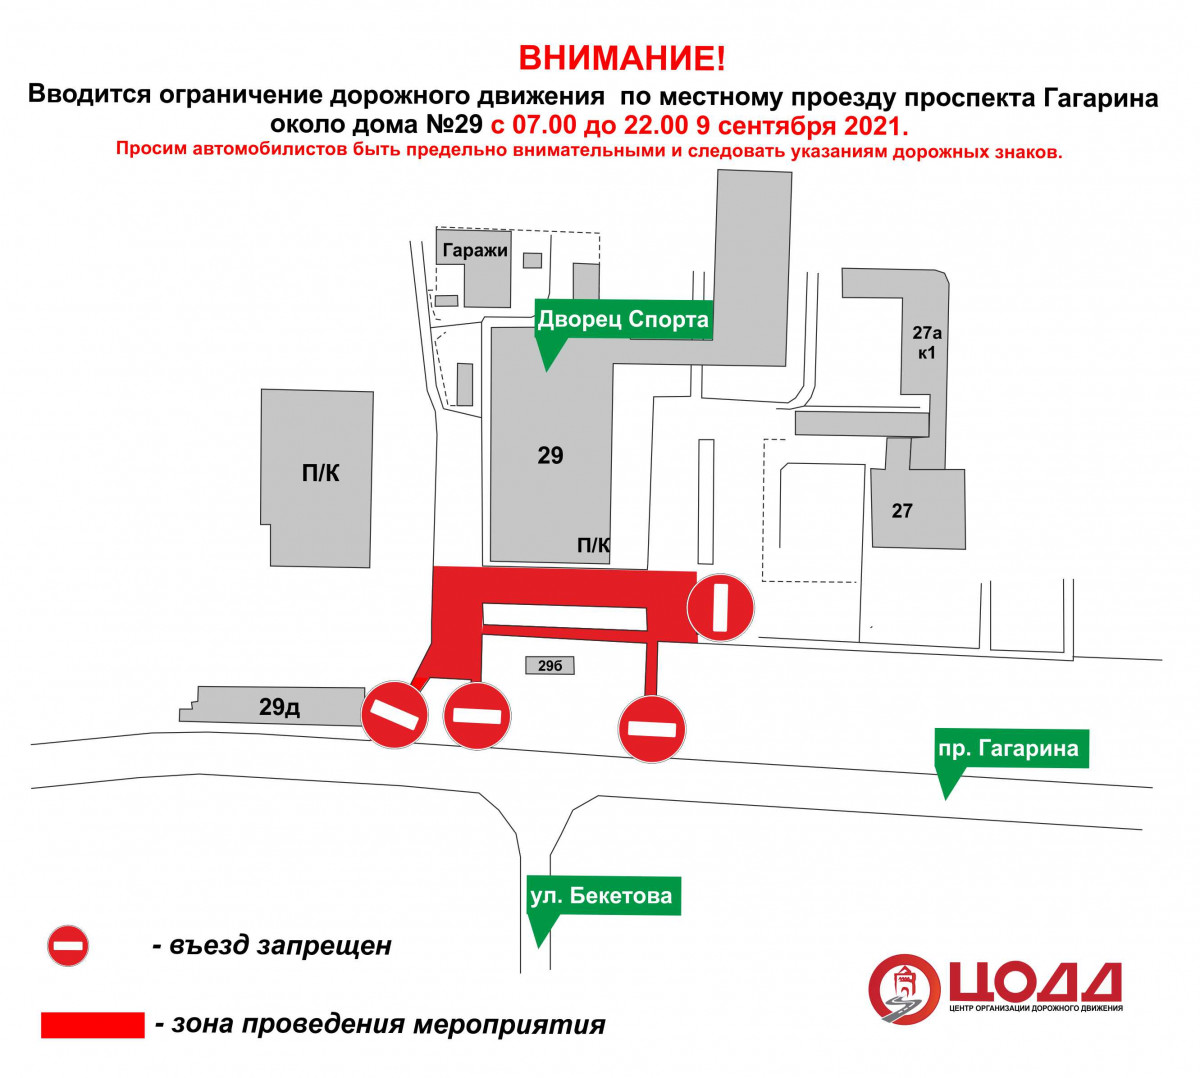 Движение транспорта приостановят по местному проезду проспекта Гагарина 9 сентября